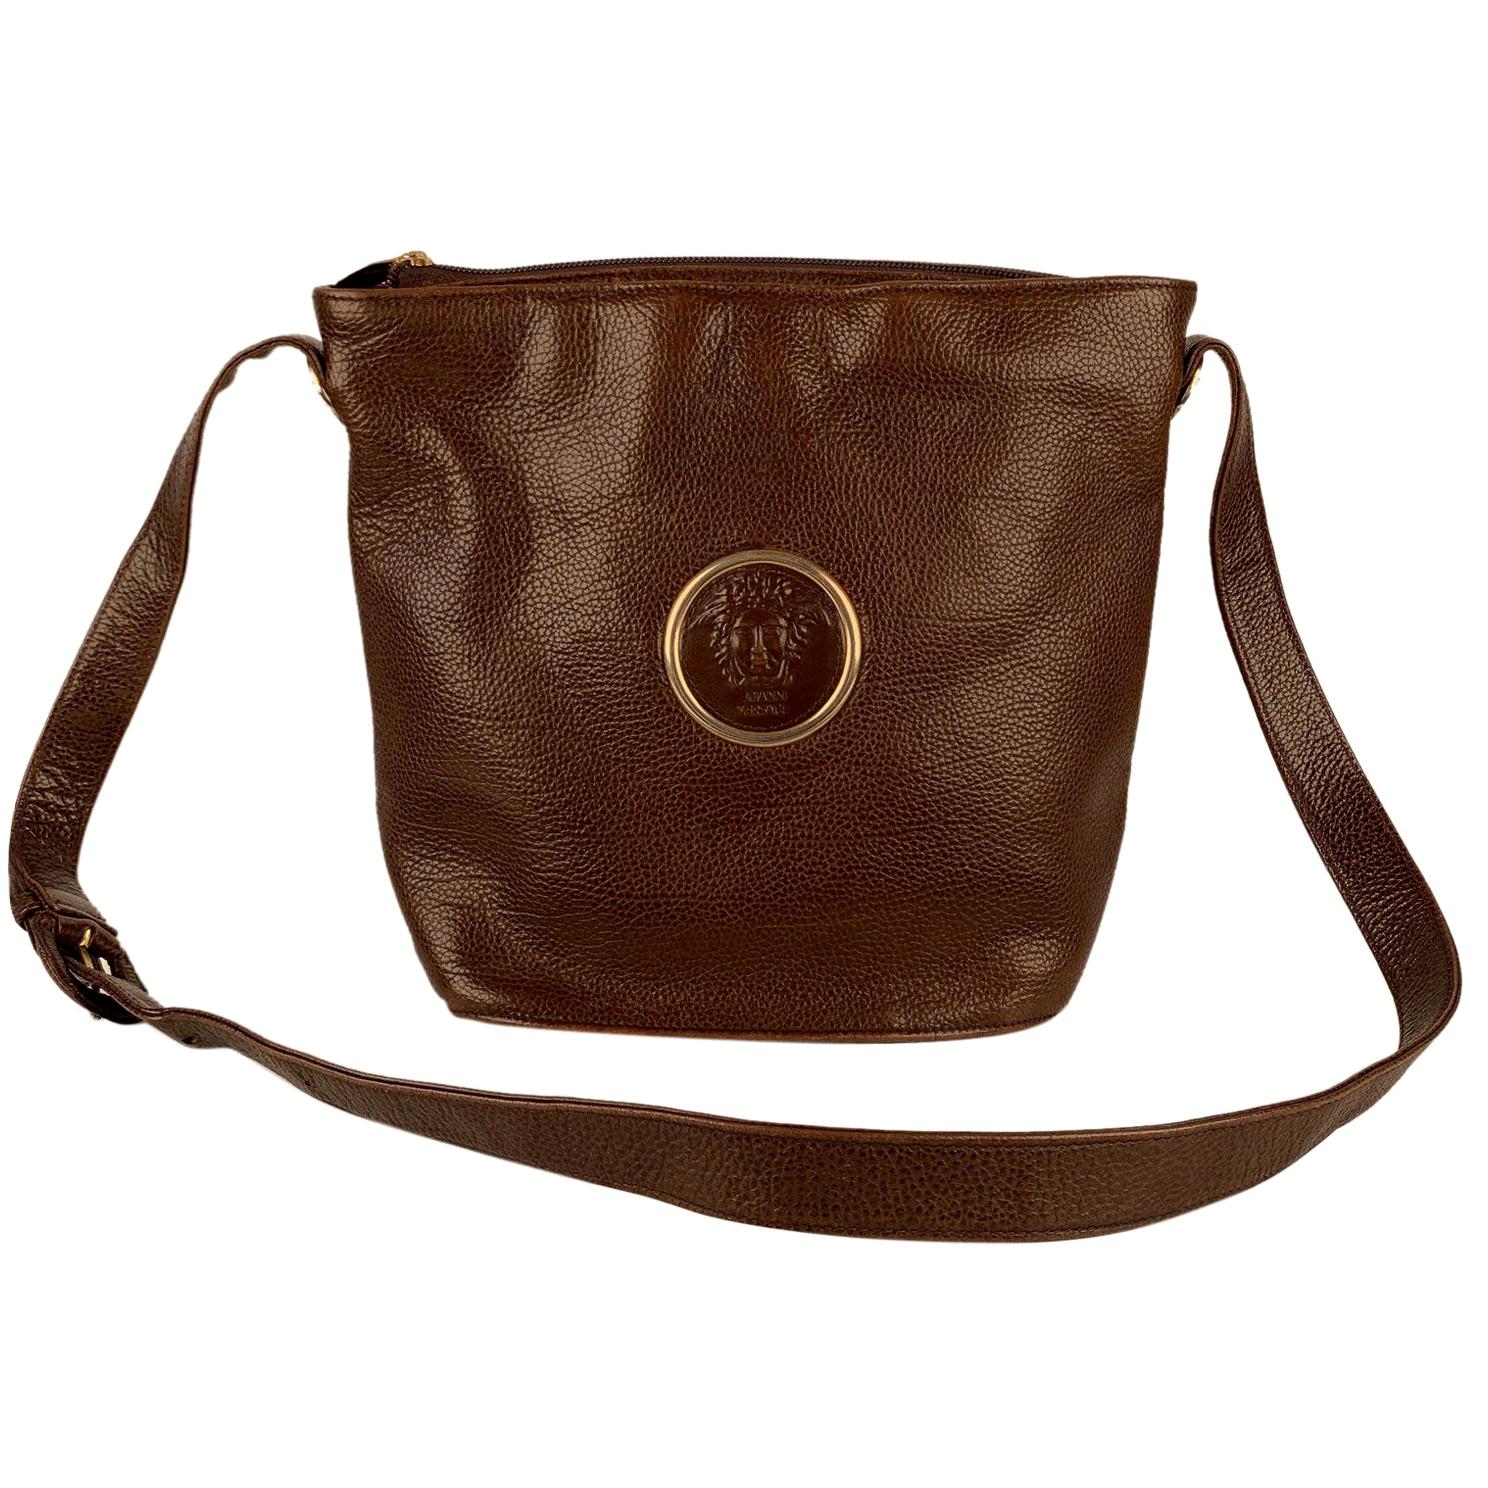 Gianni Versace Vintage Brown Leather Medusa Bucket Shoulder Bag